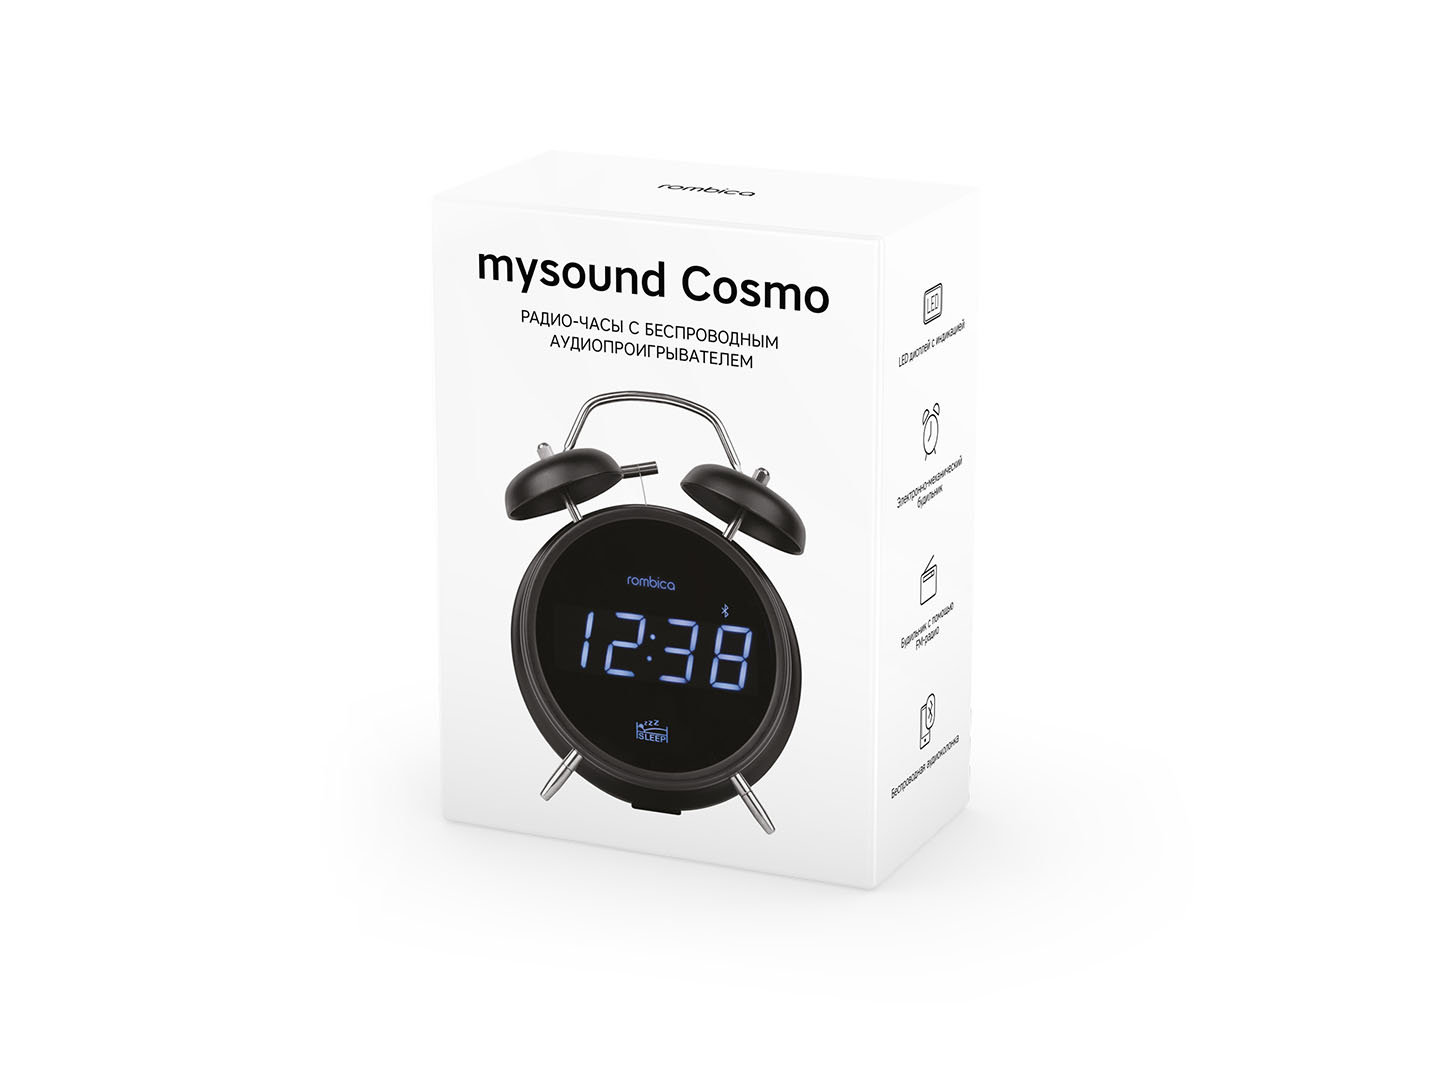 mysound Cosmo - 